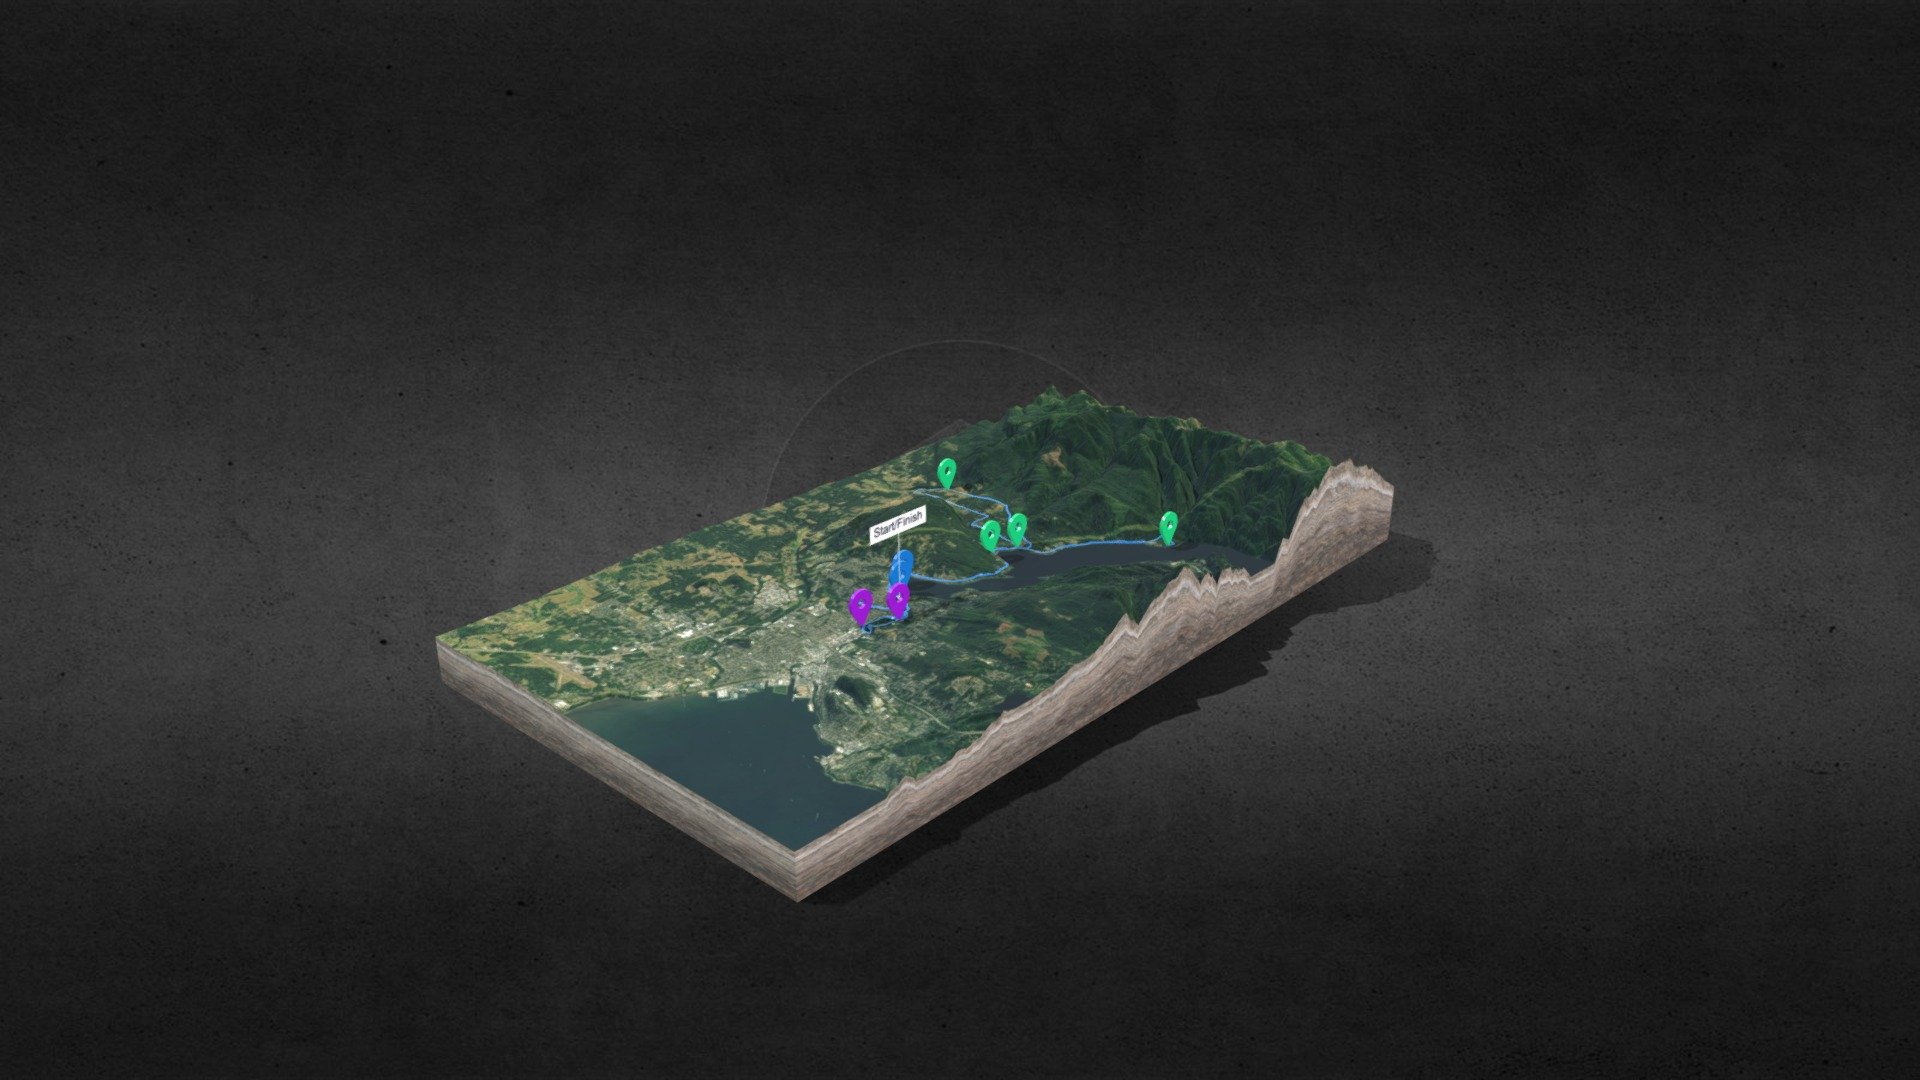 Lake Whatcom Triathlon 3D terrain map by VRoute.ca. 